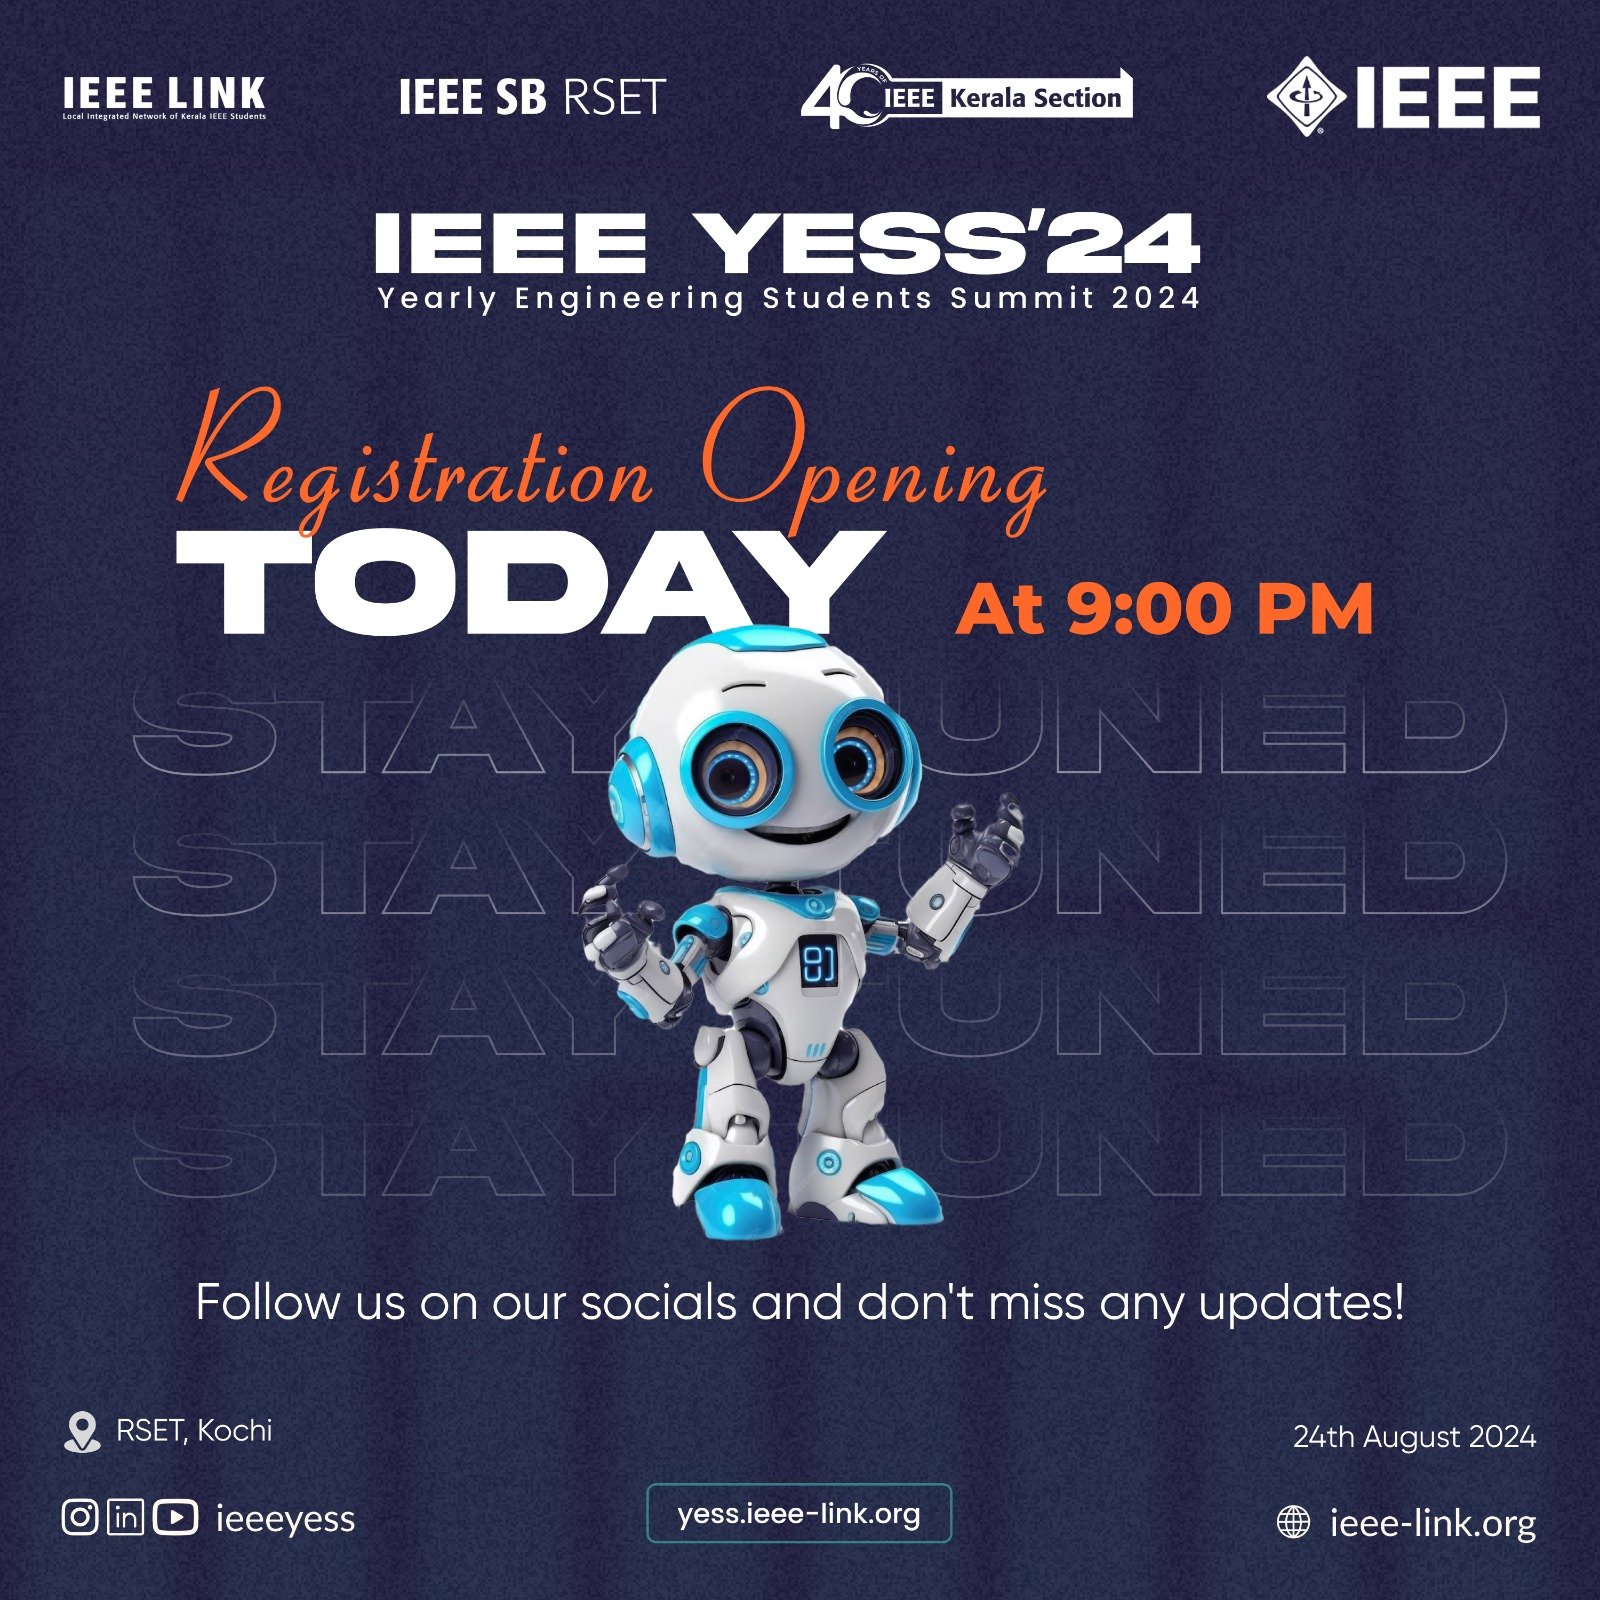 YESS’24 Registration